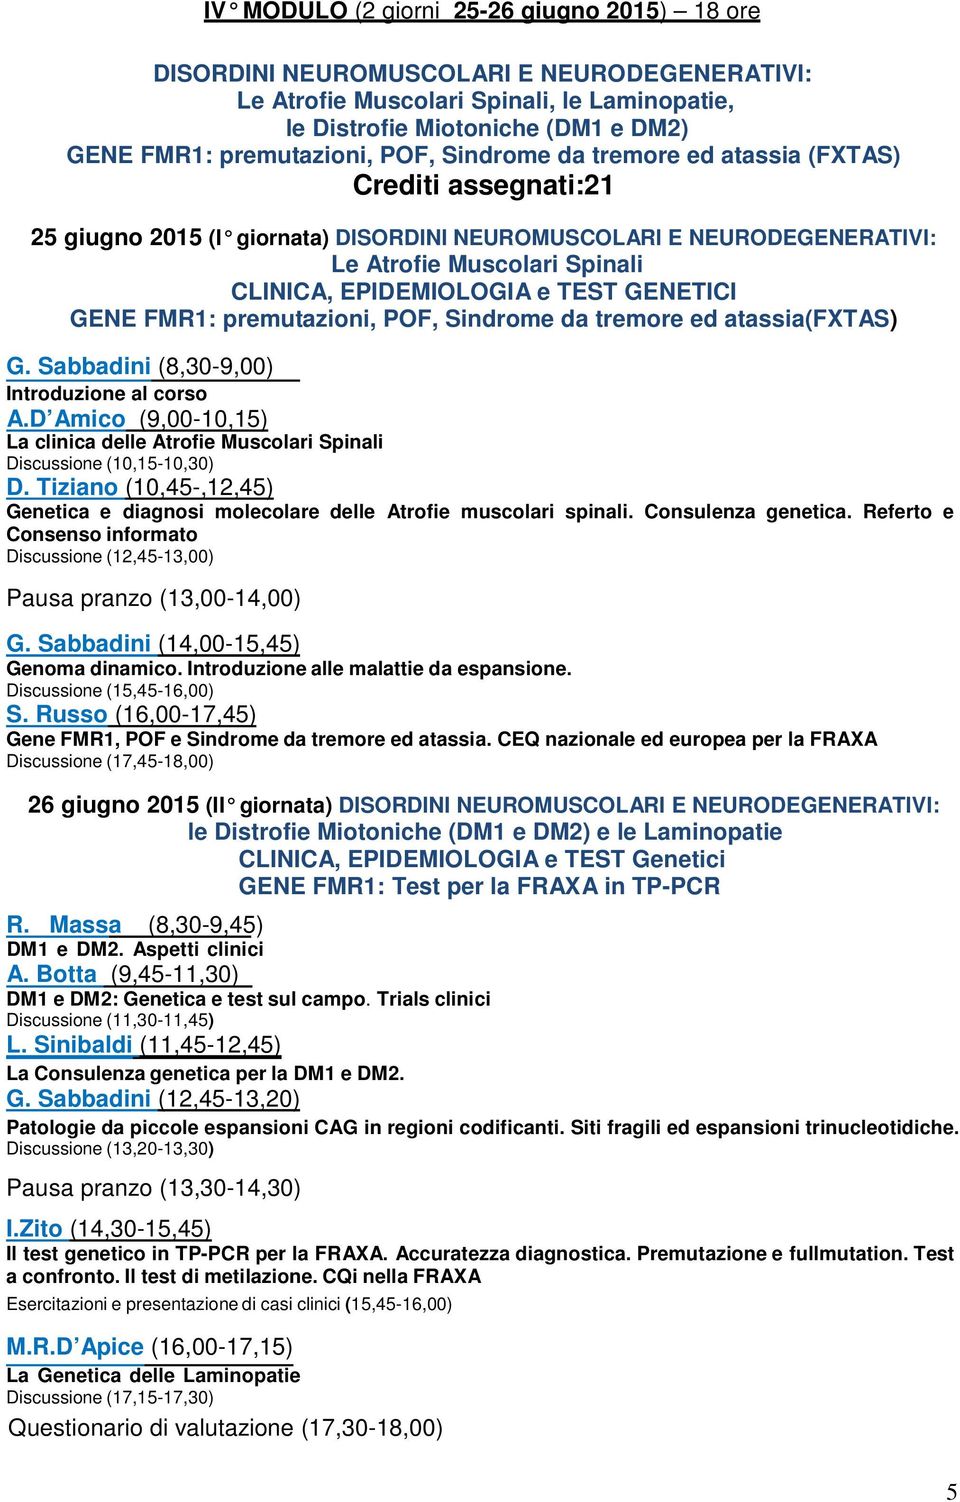 premutazioni, POF, Sindrome da tremore ed atassia(fxtas) A.D Amico (9,00-10,15) La clinica delle Atrofie Muscolari Spinali (10,15-10,30) D.